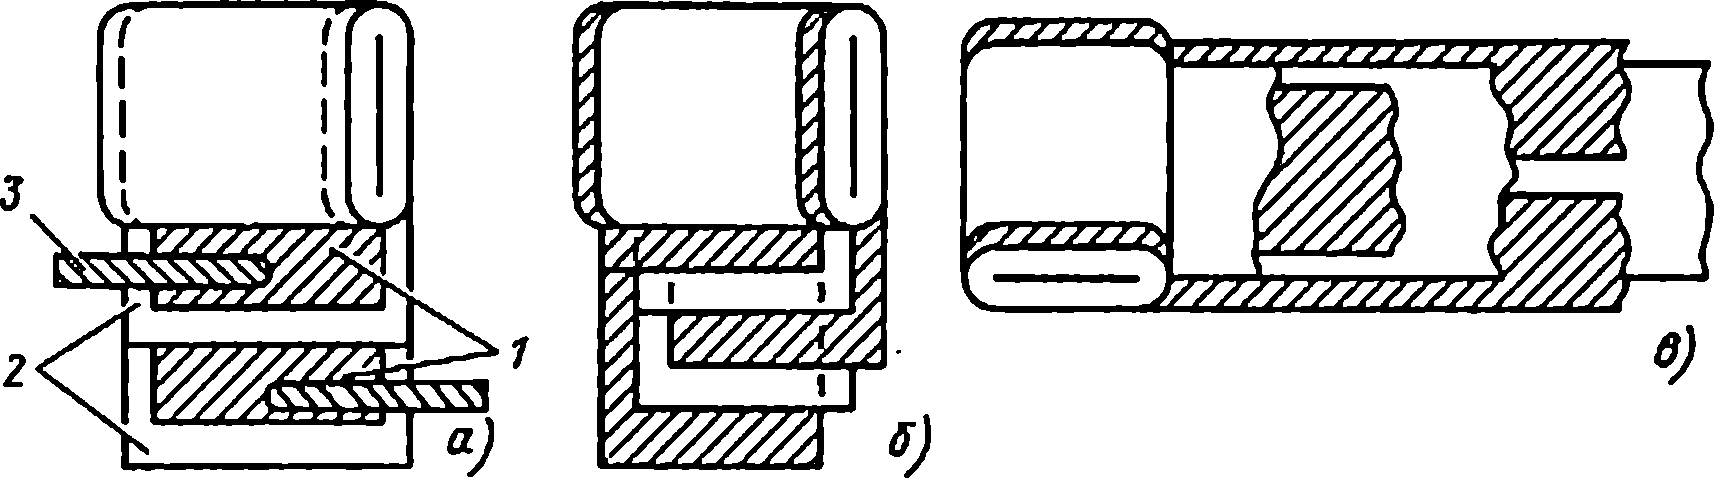 Конструкции секций конденсаторов